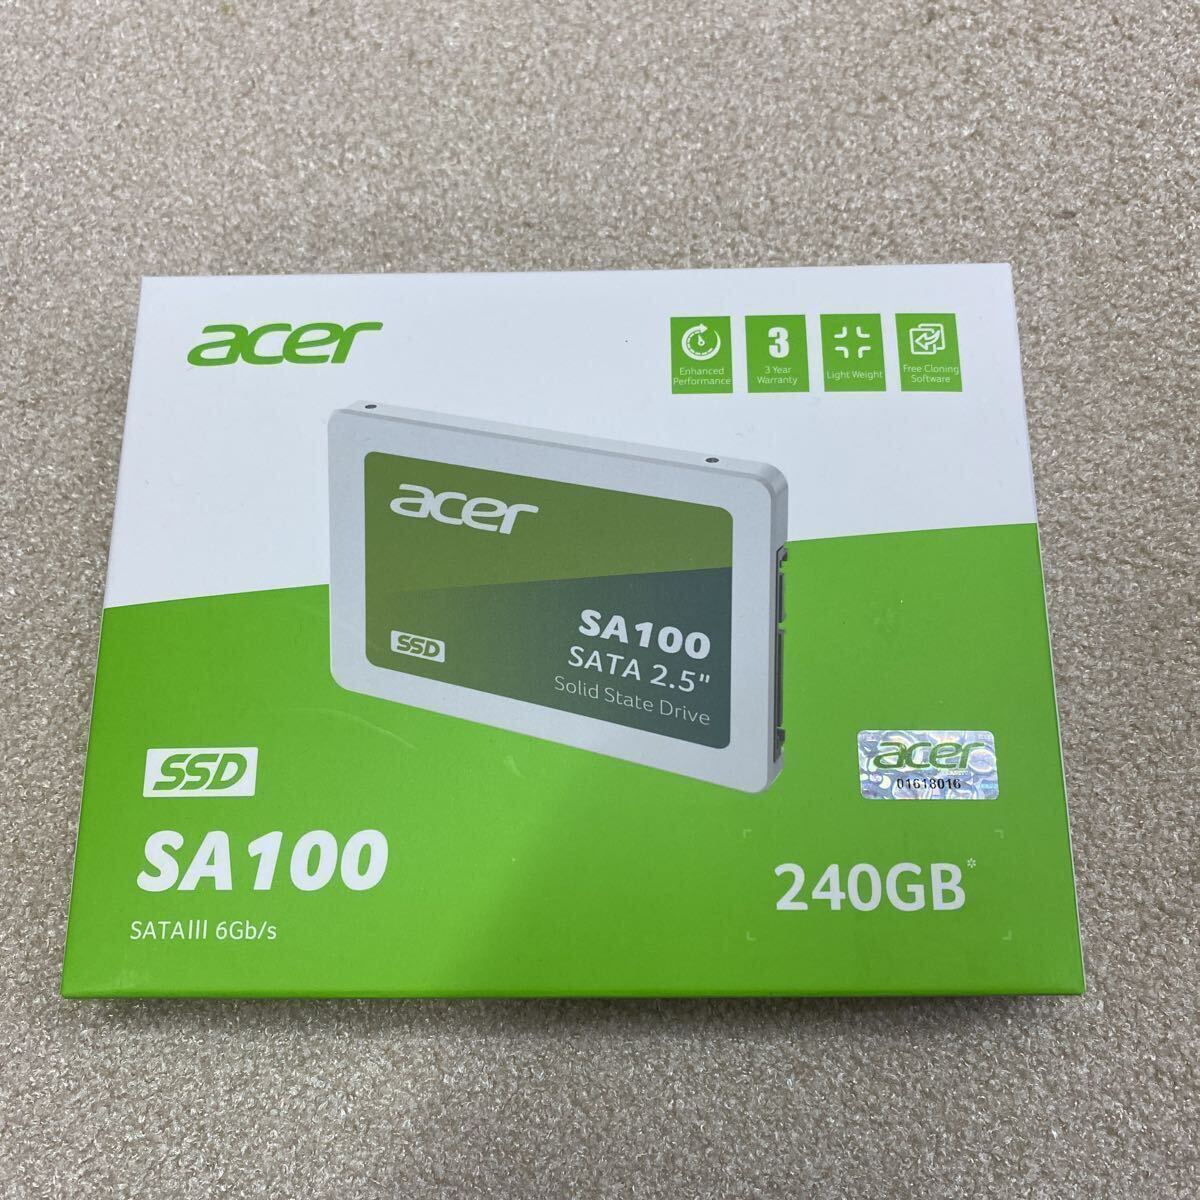 【15】大量購入歓迎 新品未使用未開封品 Acer SA100-240GB 3D NAND SATA 2.5インチSSD 最大読み取り速度560MB/s最大書き込み速度500MB/s_画像1